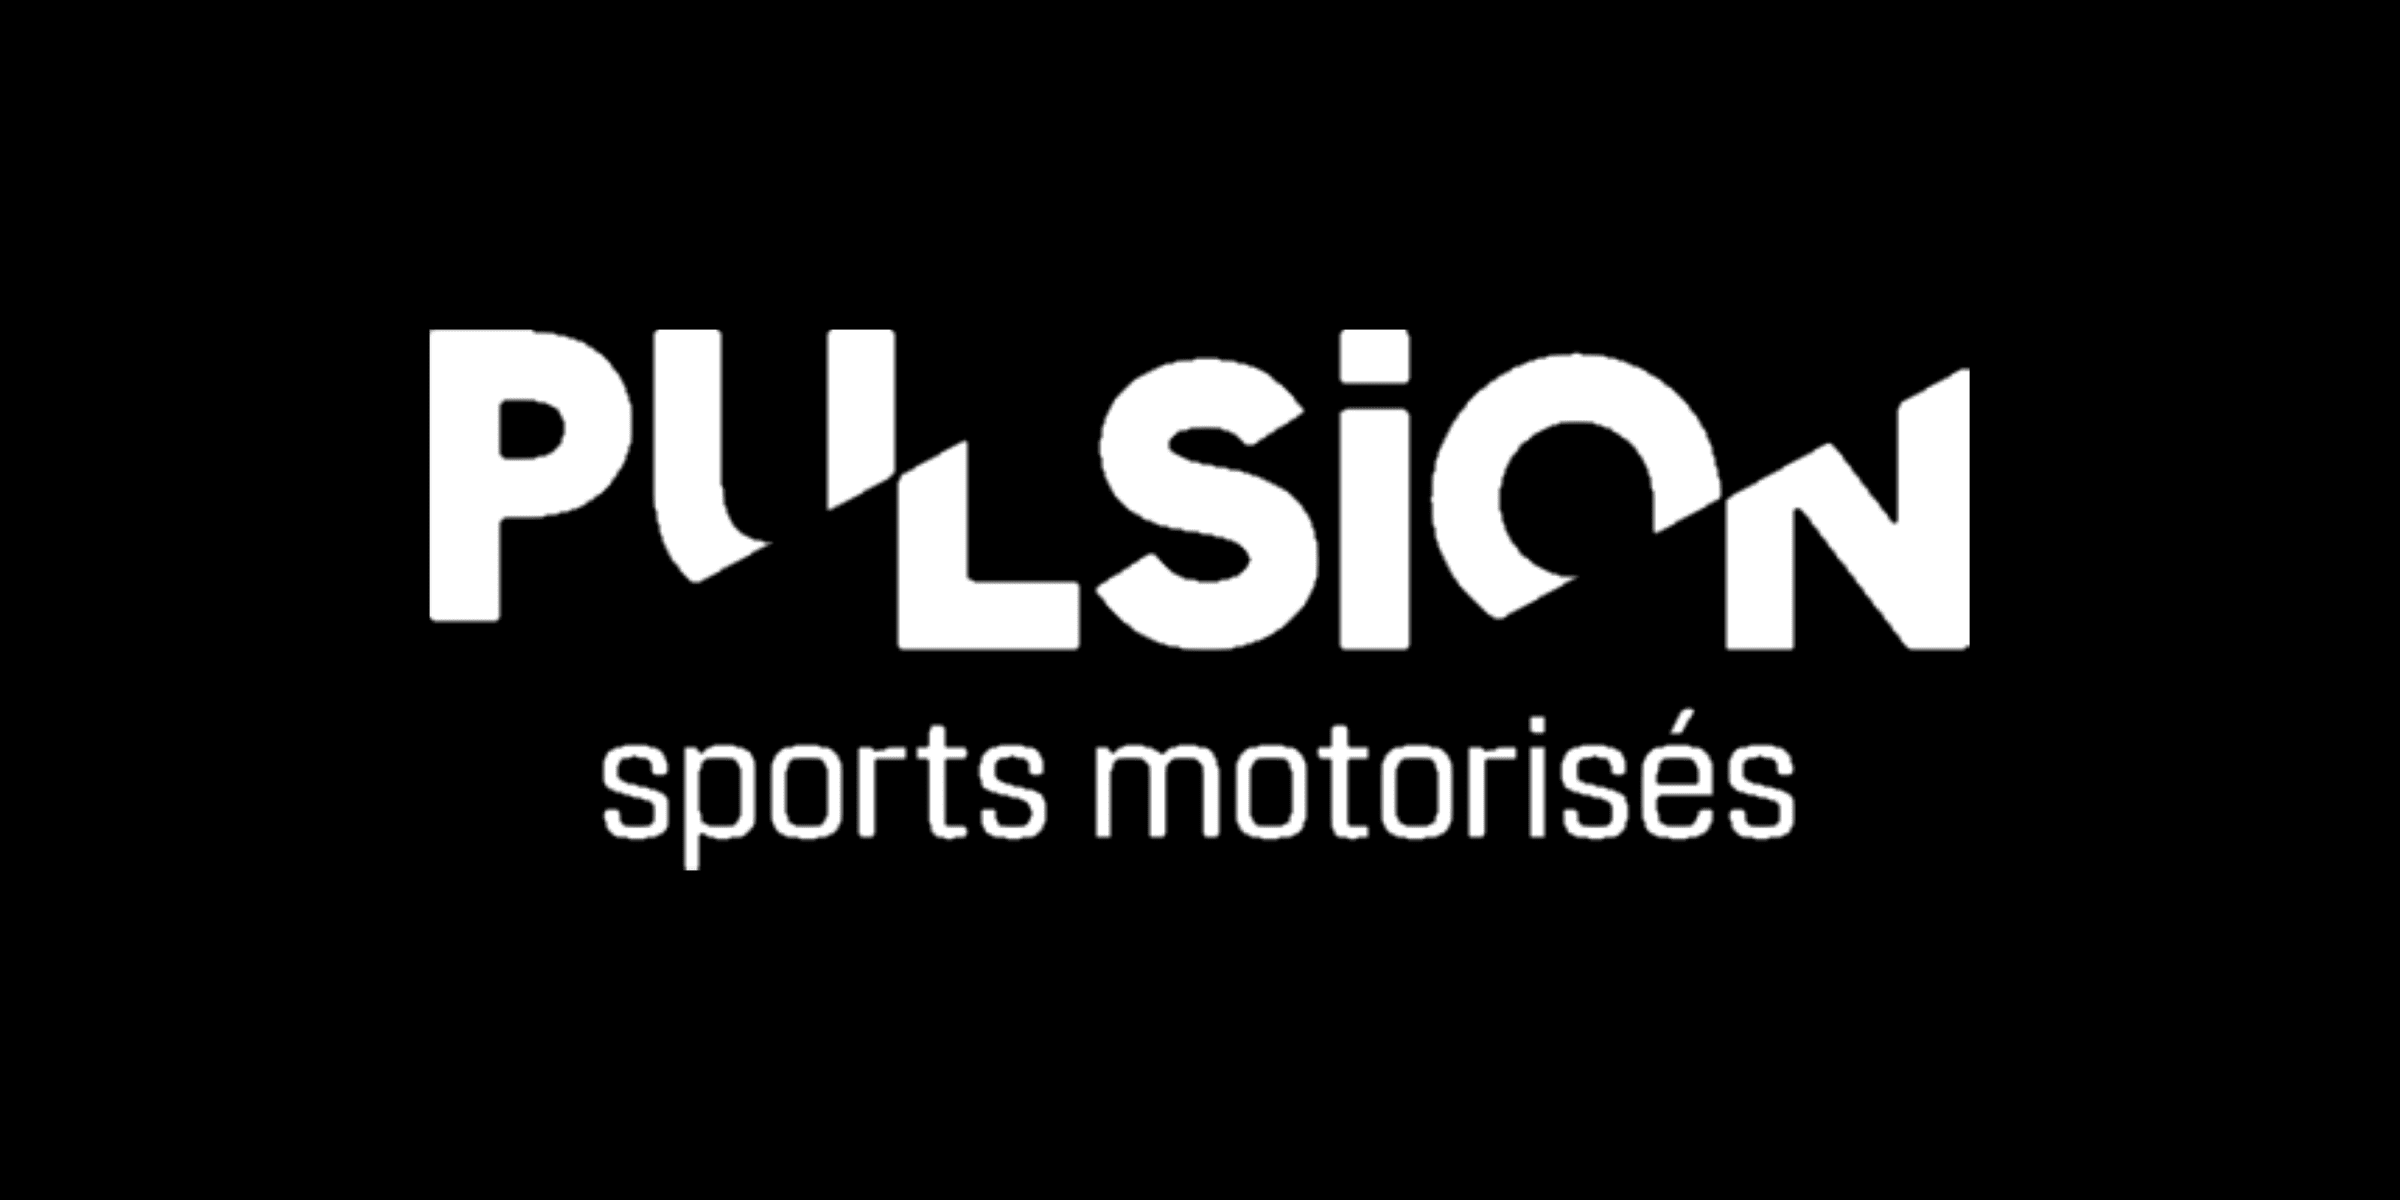 Pulsion Sports Motorisés|Pulsion Sports Motorisés|Pulsion Sports Motorisés|Pulsion Sports Motorisés